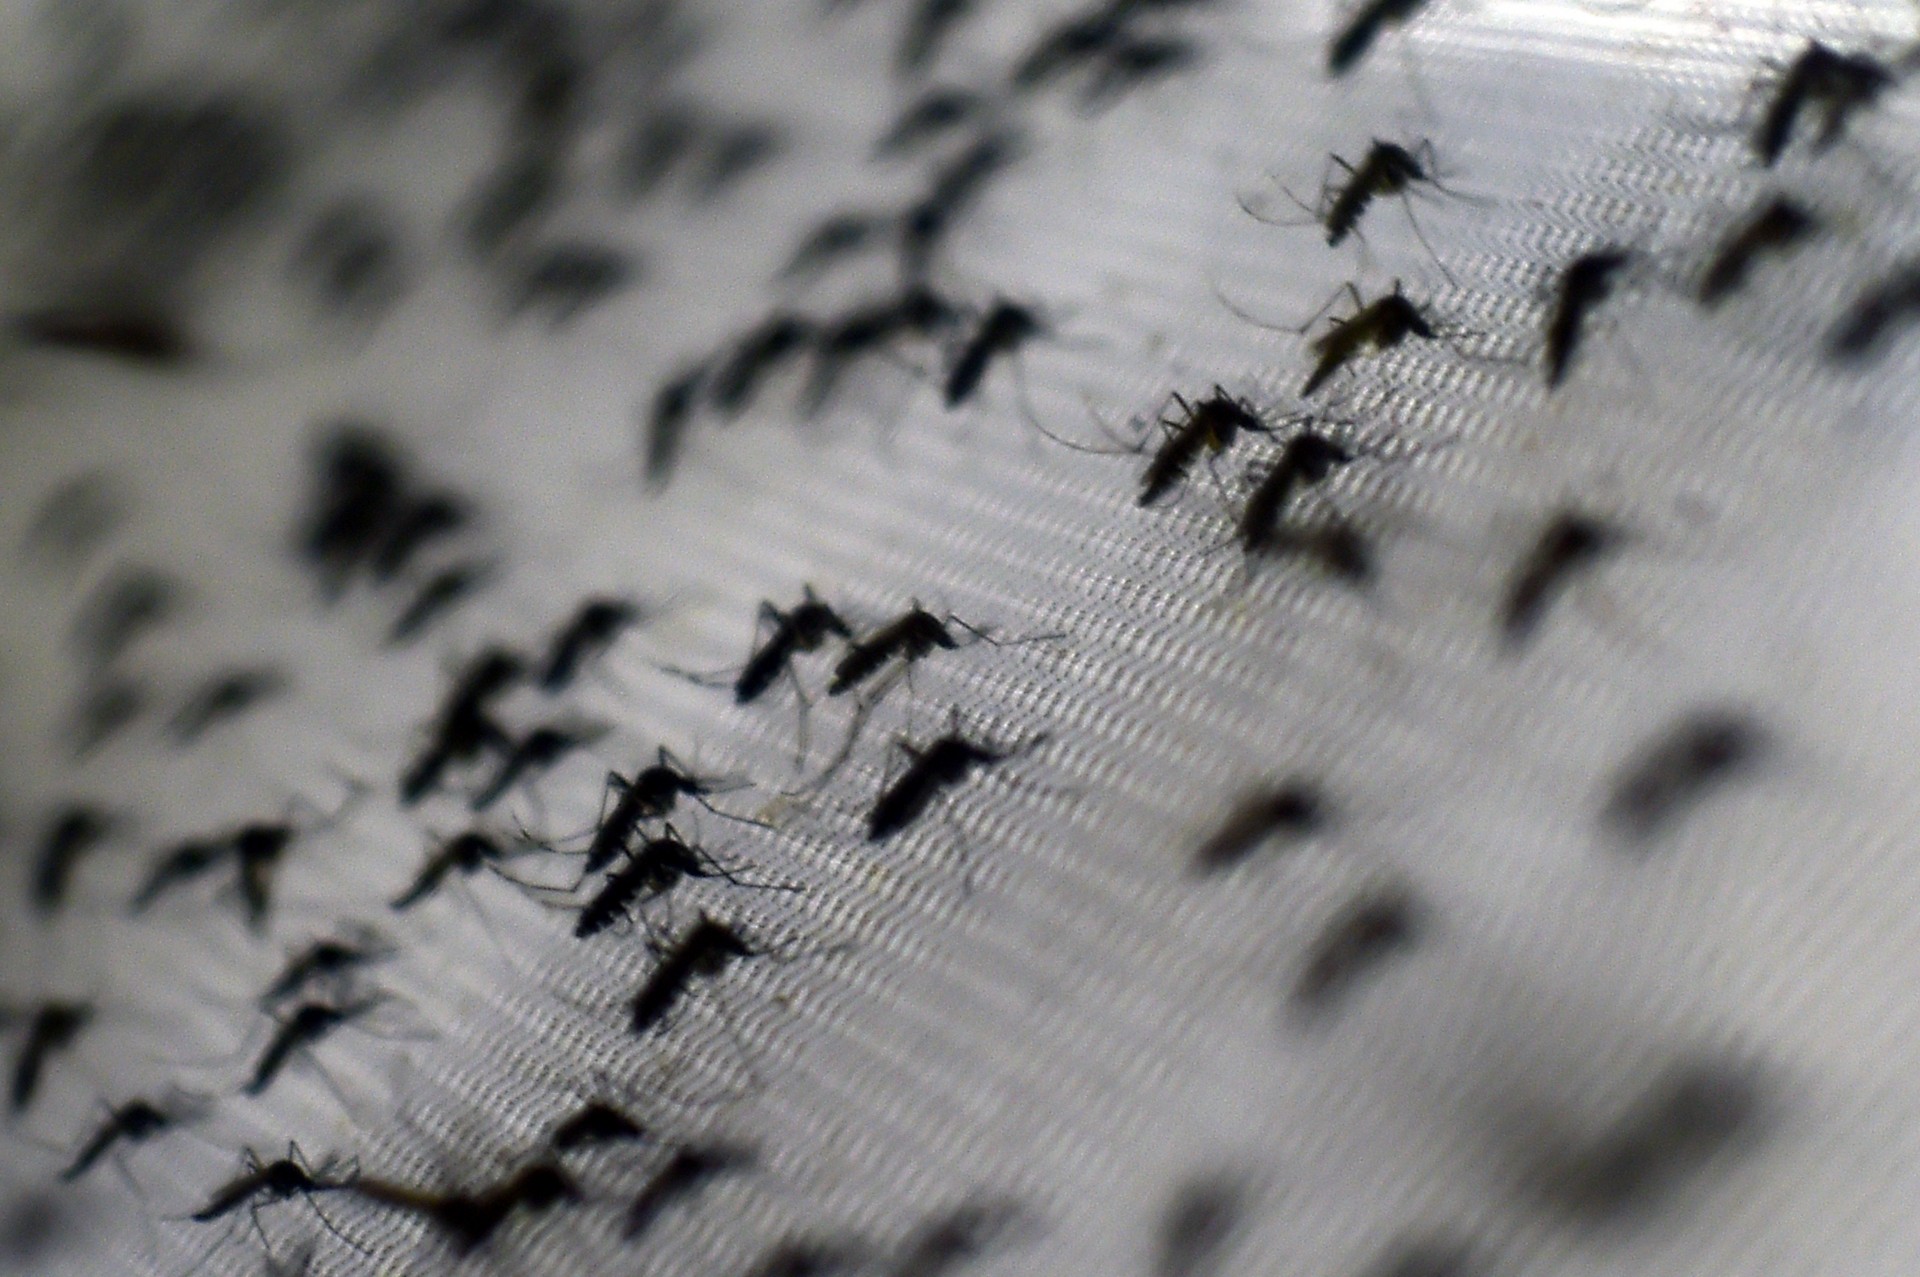 Zika vírus: saiba o que é um arbovírus